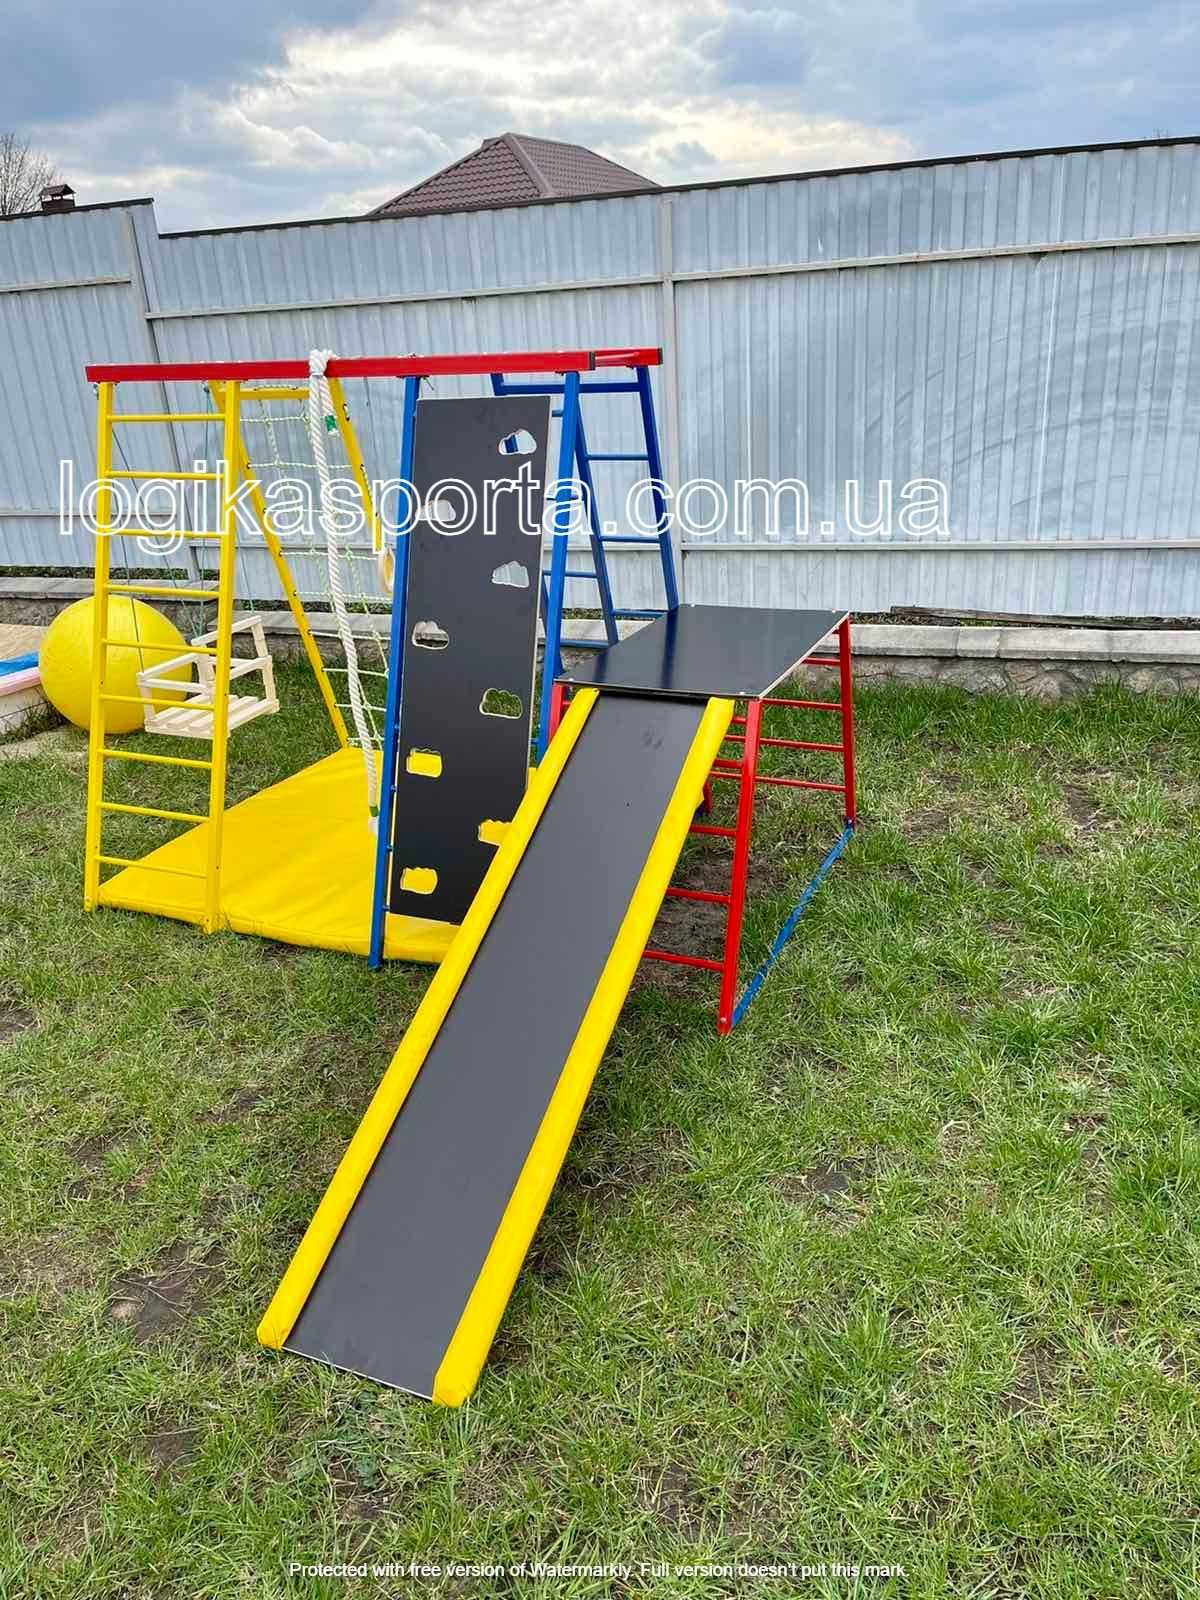 Детский спортивный комплекс 1,5-2 м, горка, качели, игровая площадка